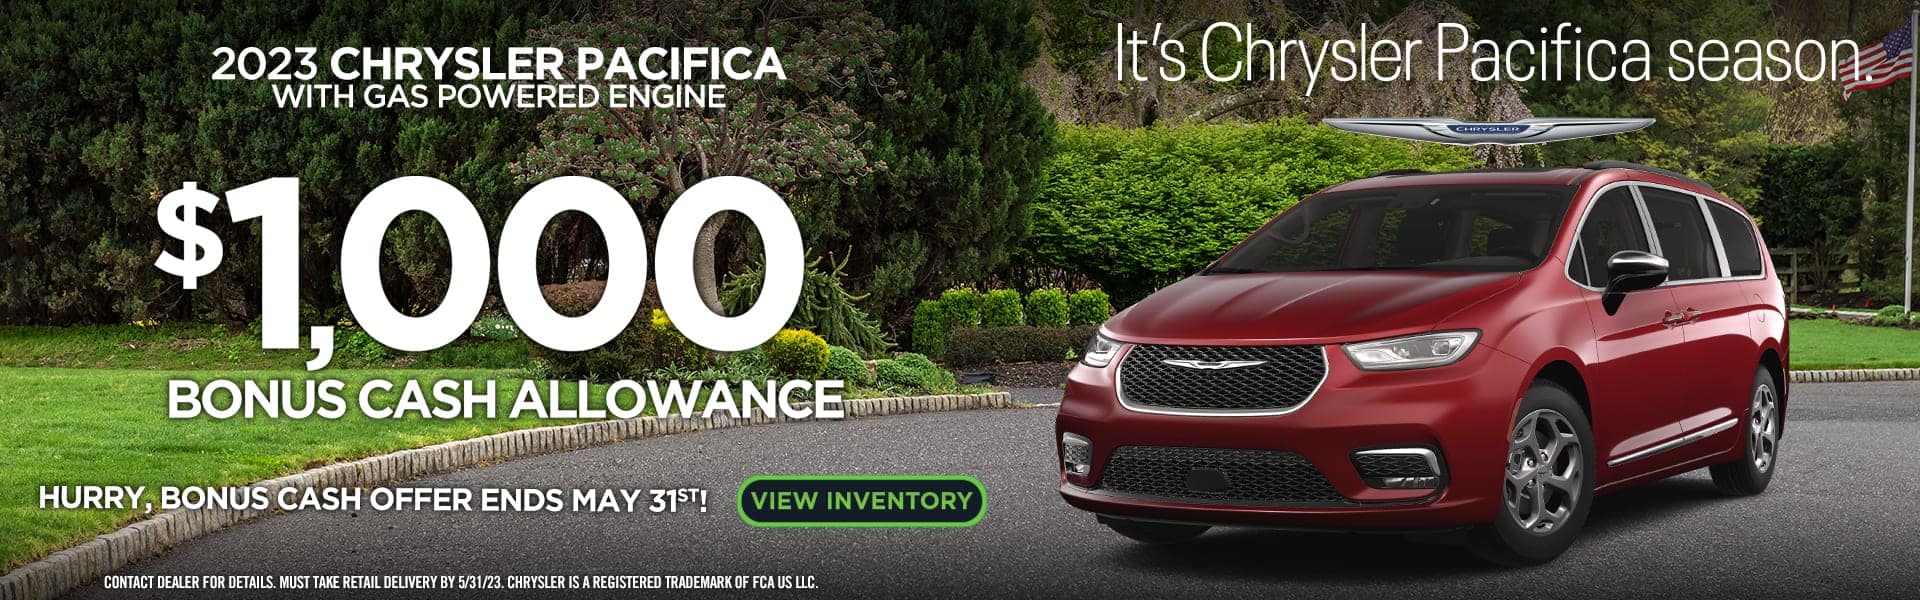 2023 Chrysler Pacifica offer